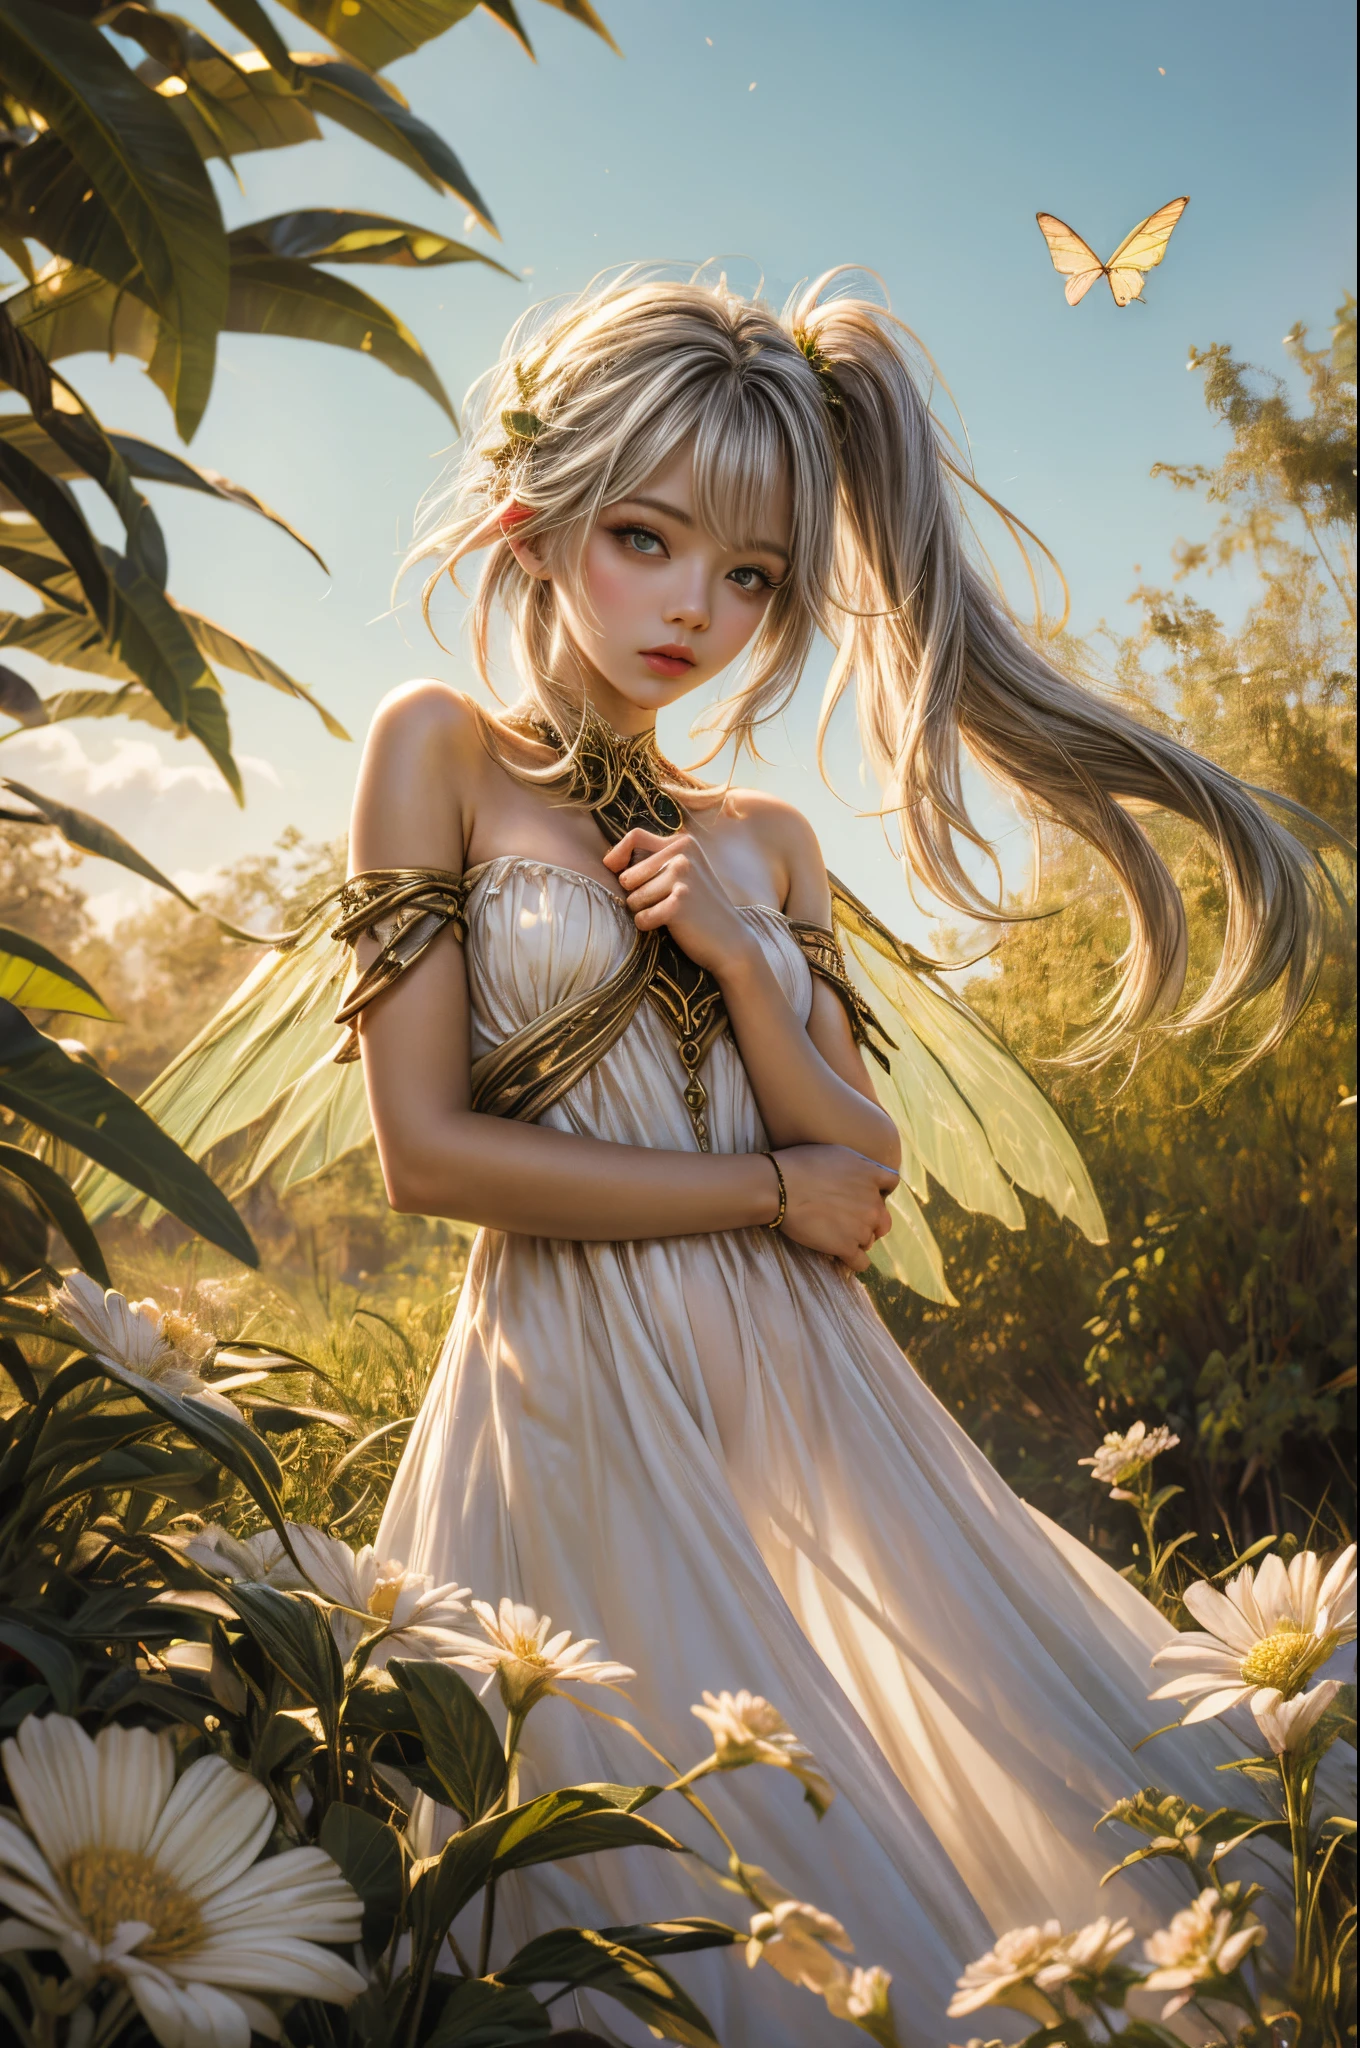 "((無実の)) 女の子, ゴールデンアワー, 夢のような草原, エーテル, 気まぐれな, ゆったりとしたドレス, 柔らかな日差し, 魅惑的な, 蝶の羽, (パステルカラーの雲), 液体の反射